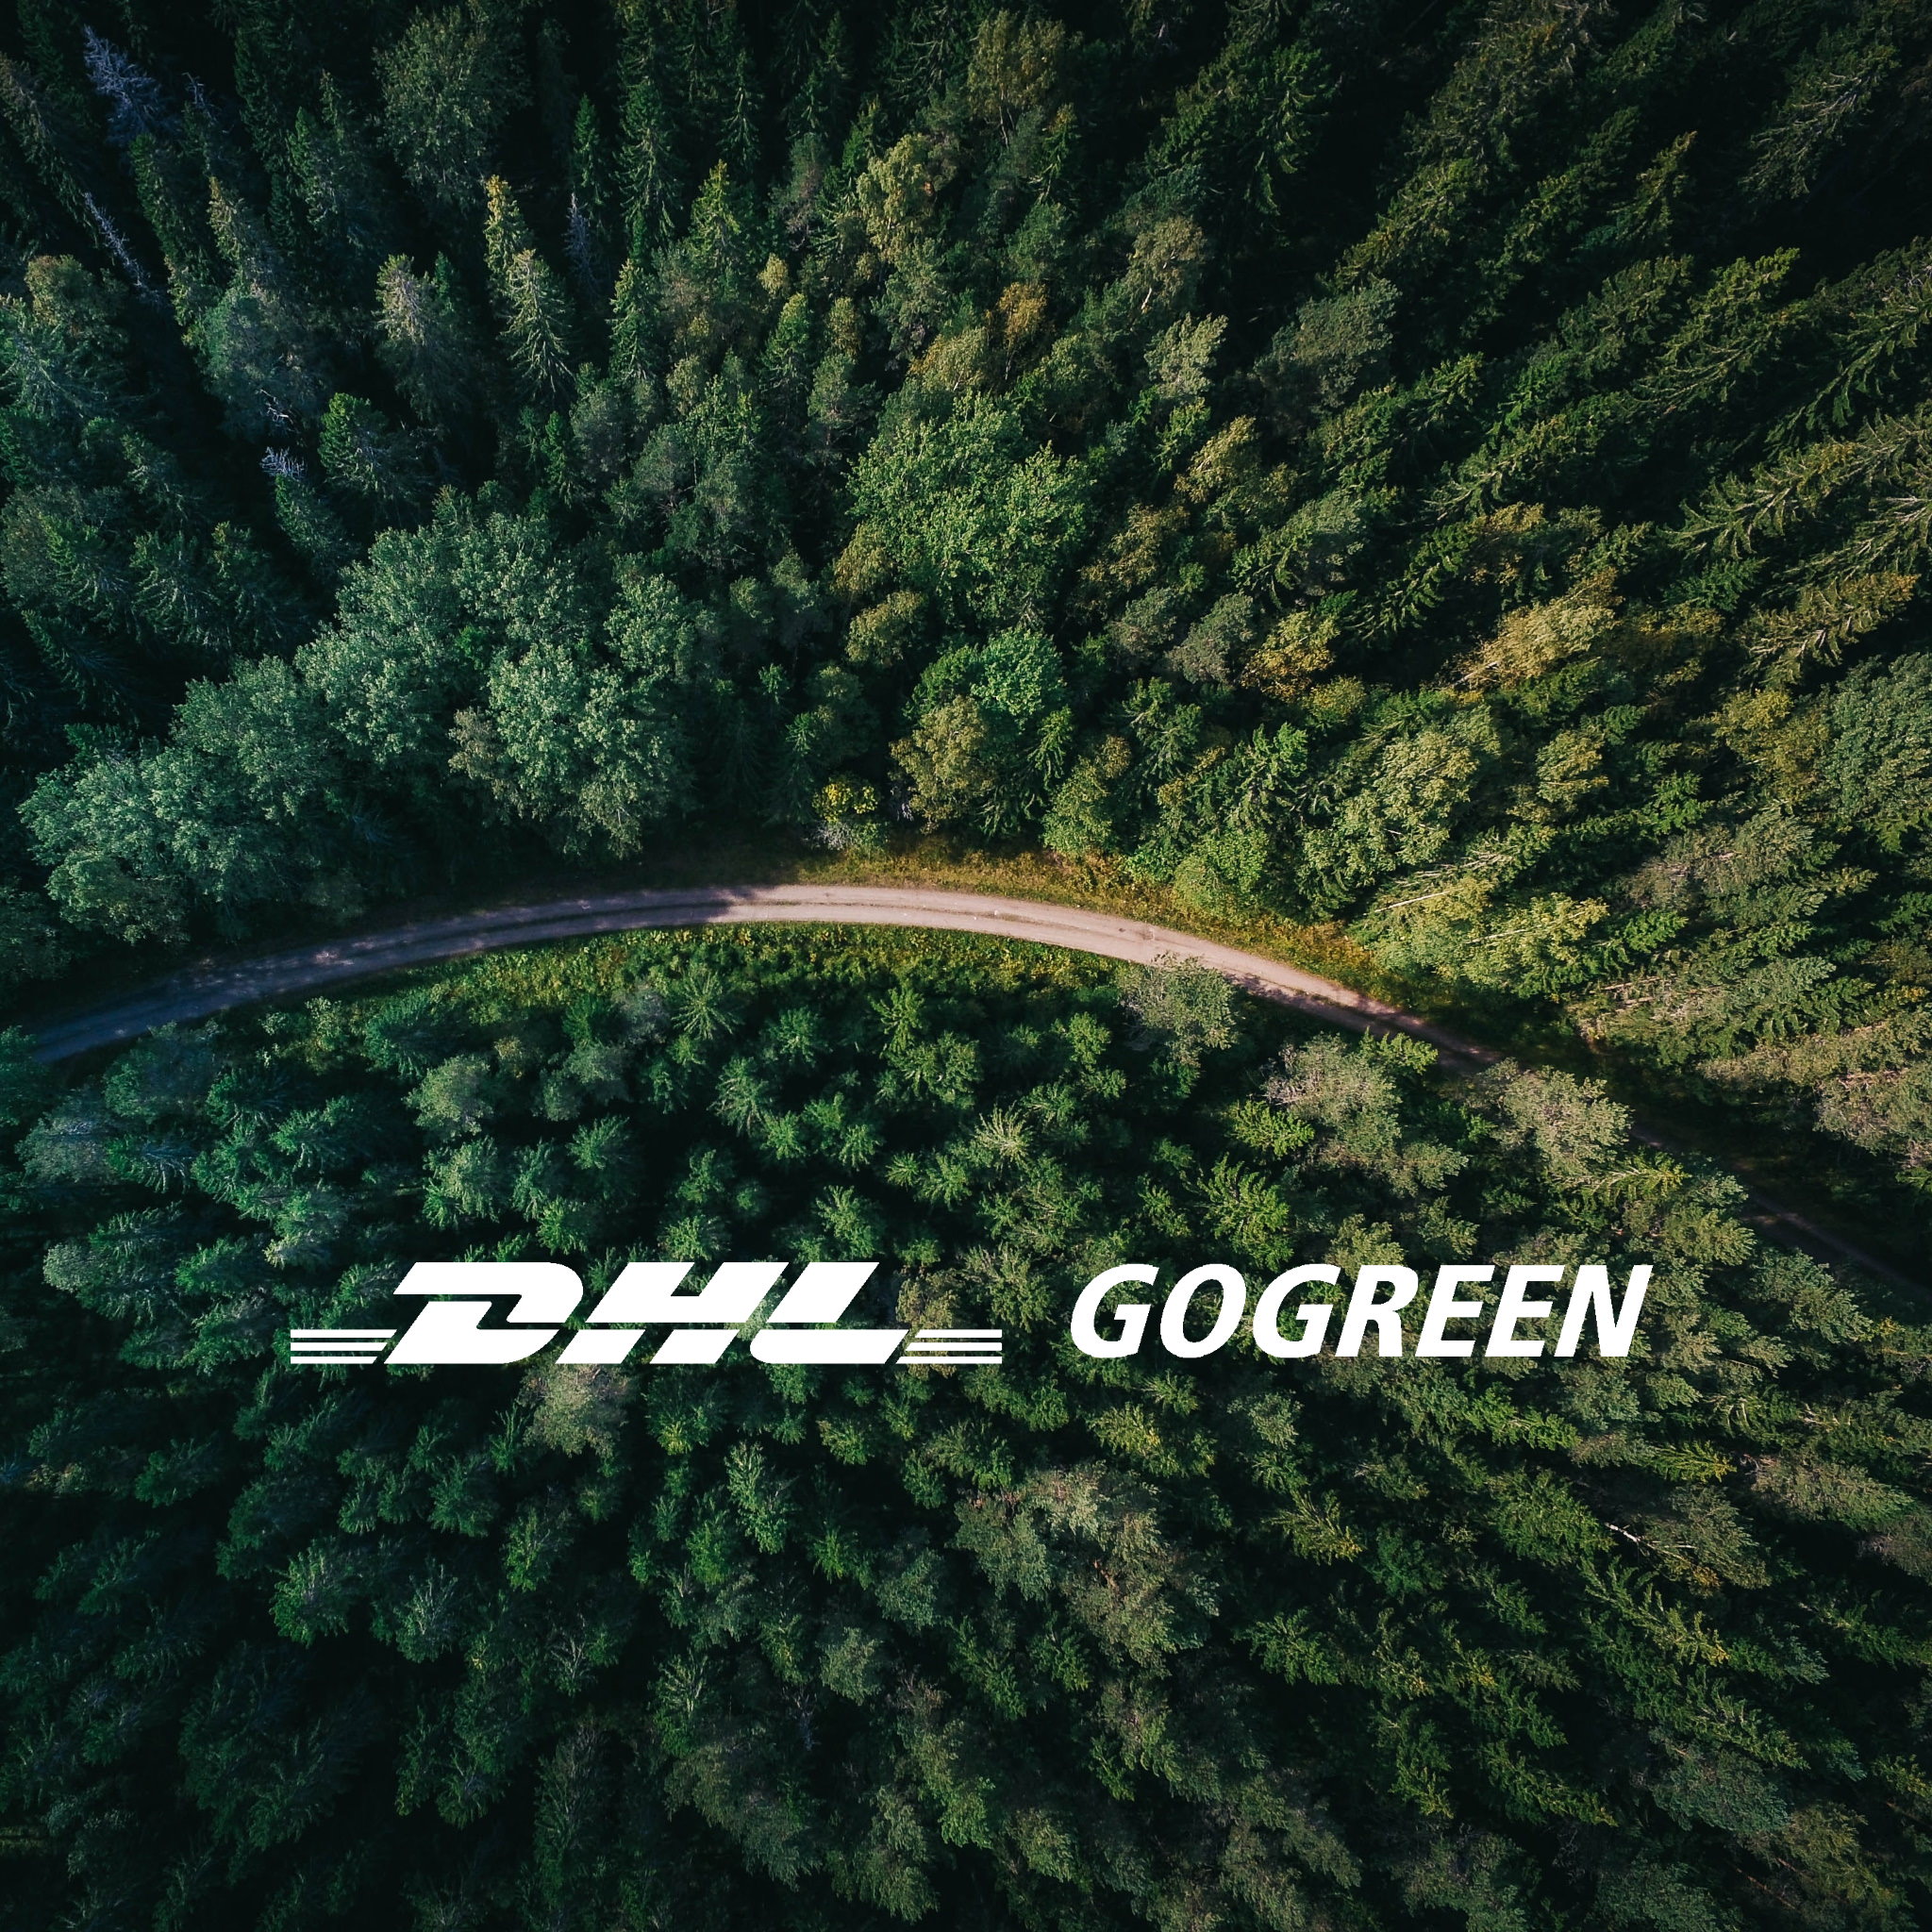 Versand mit DHL GoGreen | GROCH & ERBEN